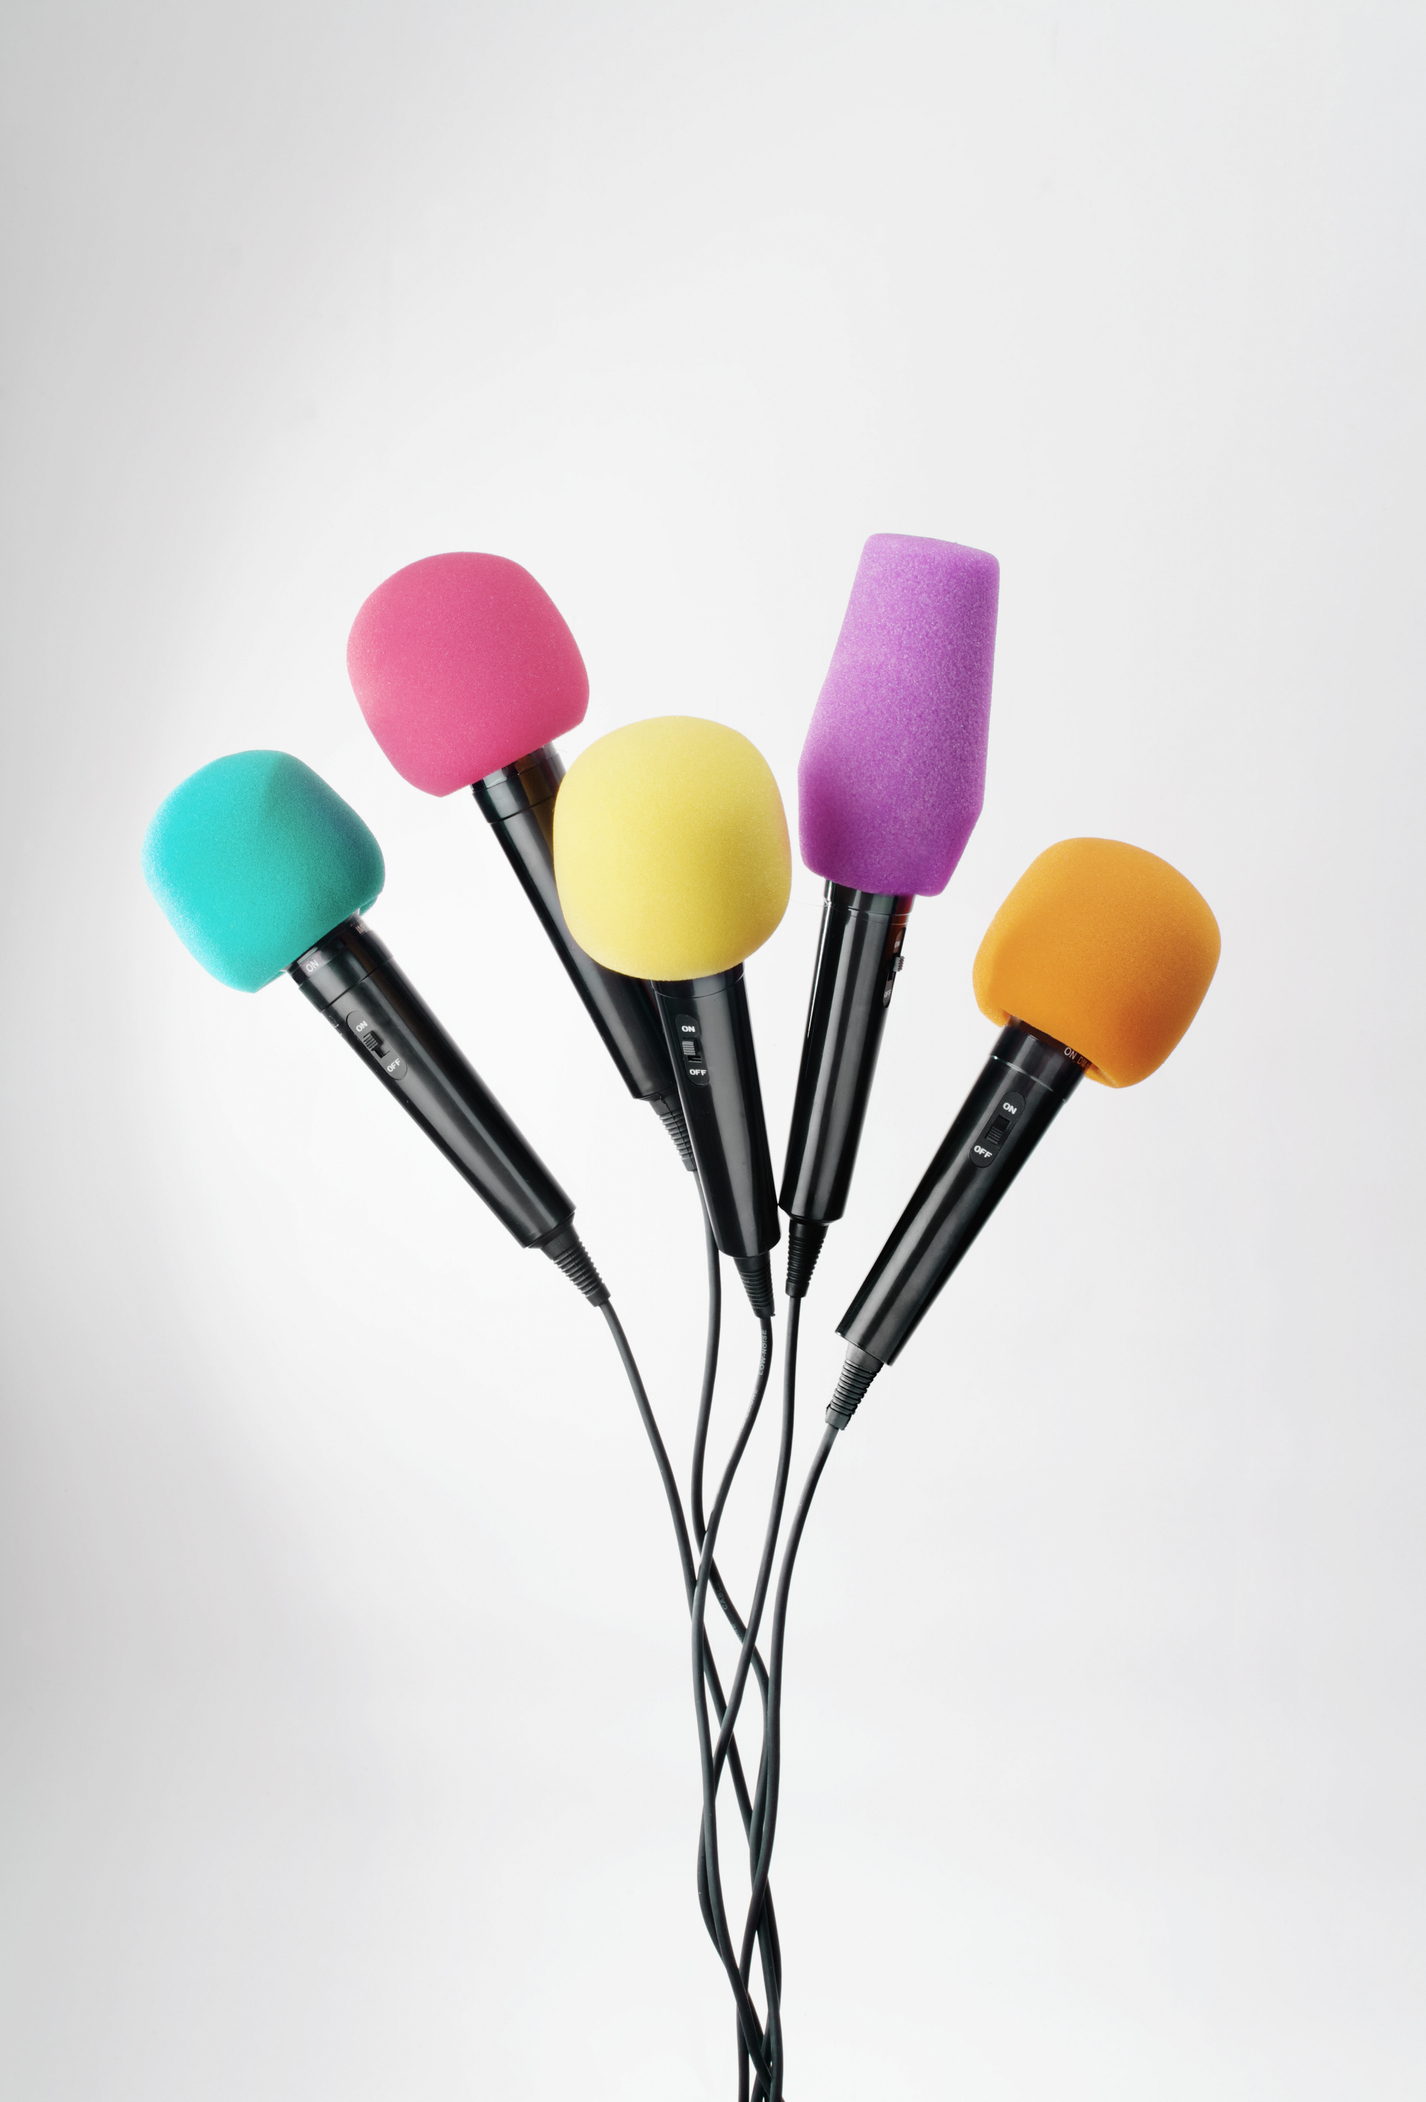 Fünf Mikrofone vor einem weißen Hintergrund. Die Köpfe der Mikrofone sind türkis, pink, gelb, lila und orange.